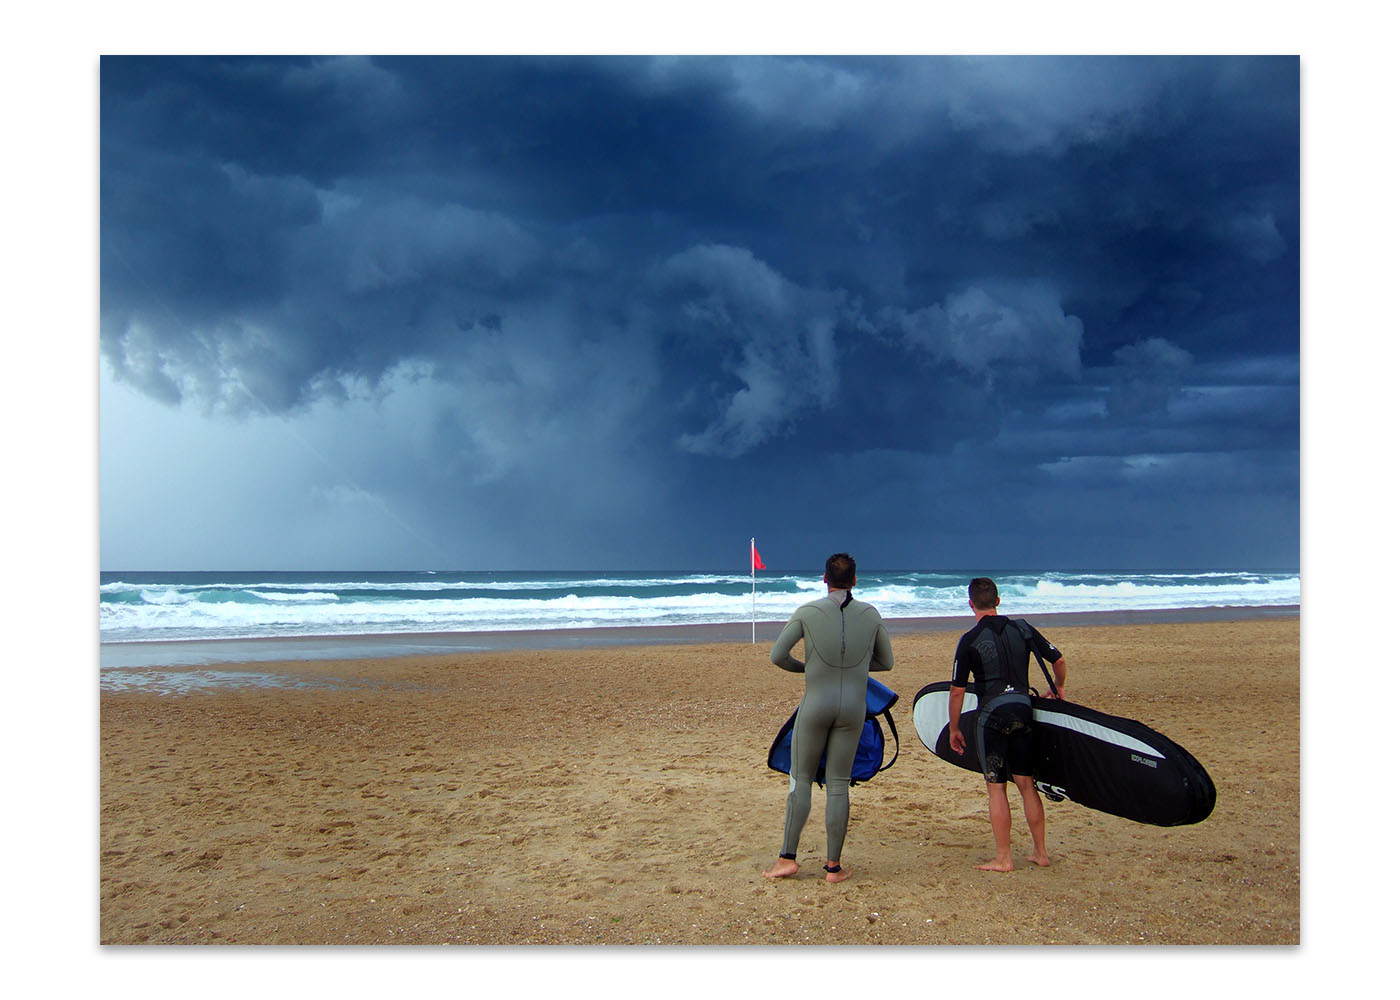 Deux surfeurs face à la mer, au loin de gros nuages orageux, ils hésitent à y aller